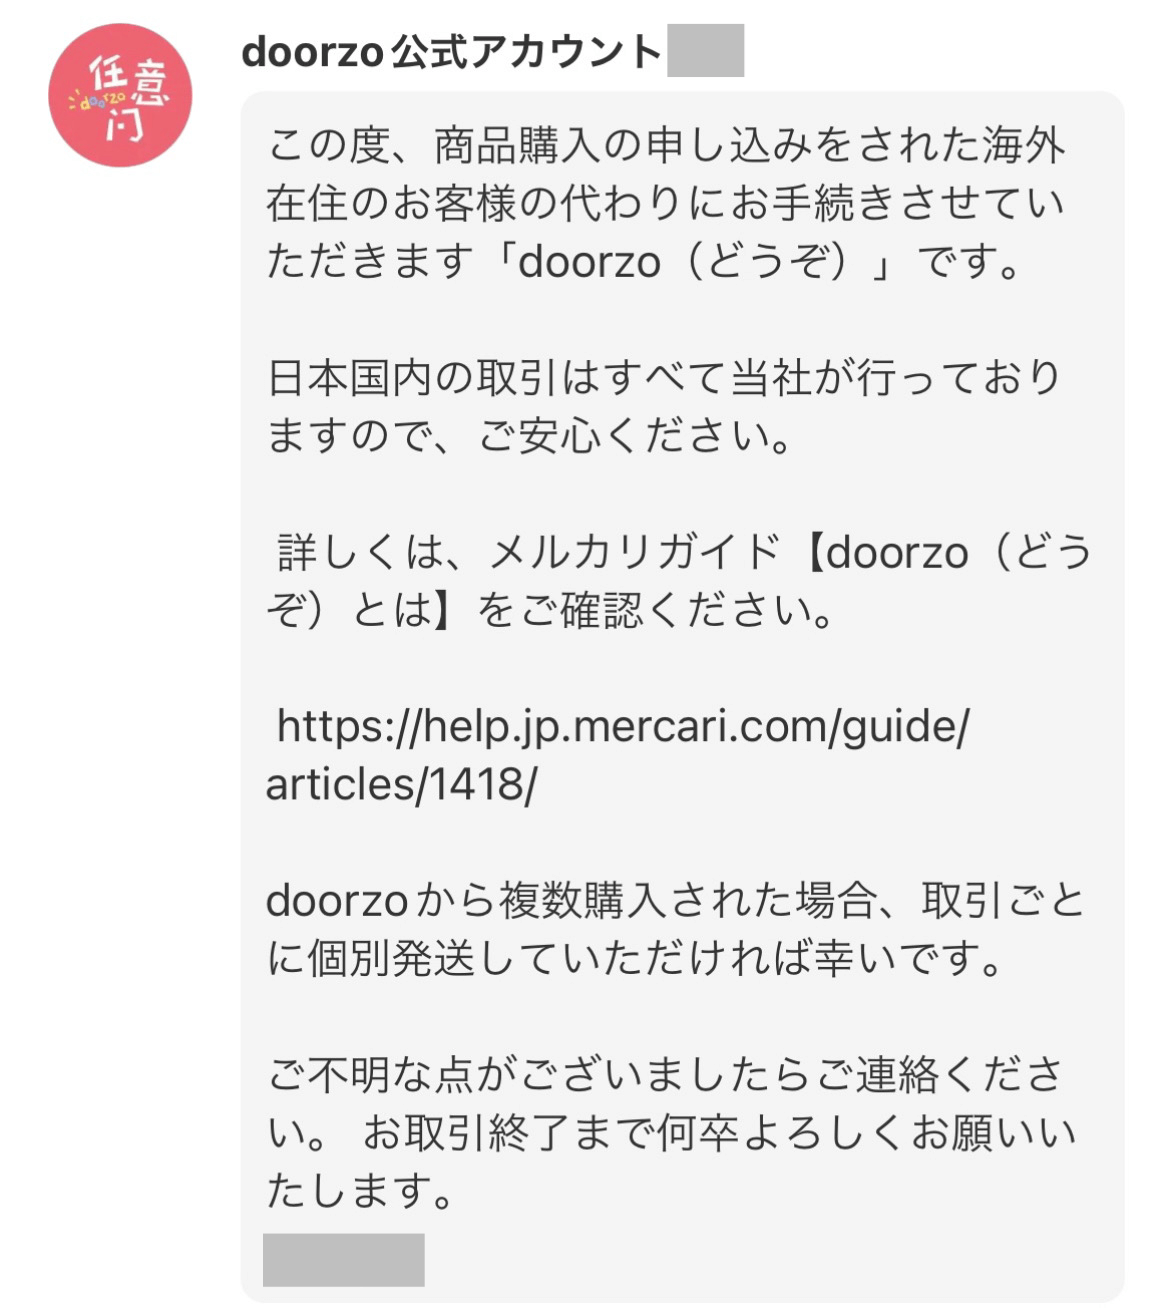 doorzo公式アカウント

この度、商品購入の申し込みをされた海外在住のお客様の代わりにお手続きさせていただきます「doorzo（どうぞ）」です。

日本国内の取引はすべて当社が行っておりますので、ご安心ください。

詳しくは、メルカリガイド【doorzo（どうぞ）とは】をご確認ください。

https://help.jp.mercari.com/guide/articles/1418/

doorzoから複数購入された場合、取引ごとに個別発送していただければ幸いです。

ご不明な点がございましたらご連絡ください。お取引終了まで何卒よろしくお願いいたします。